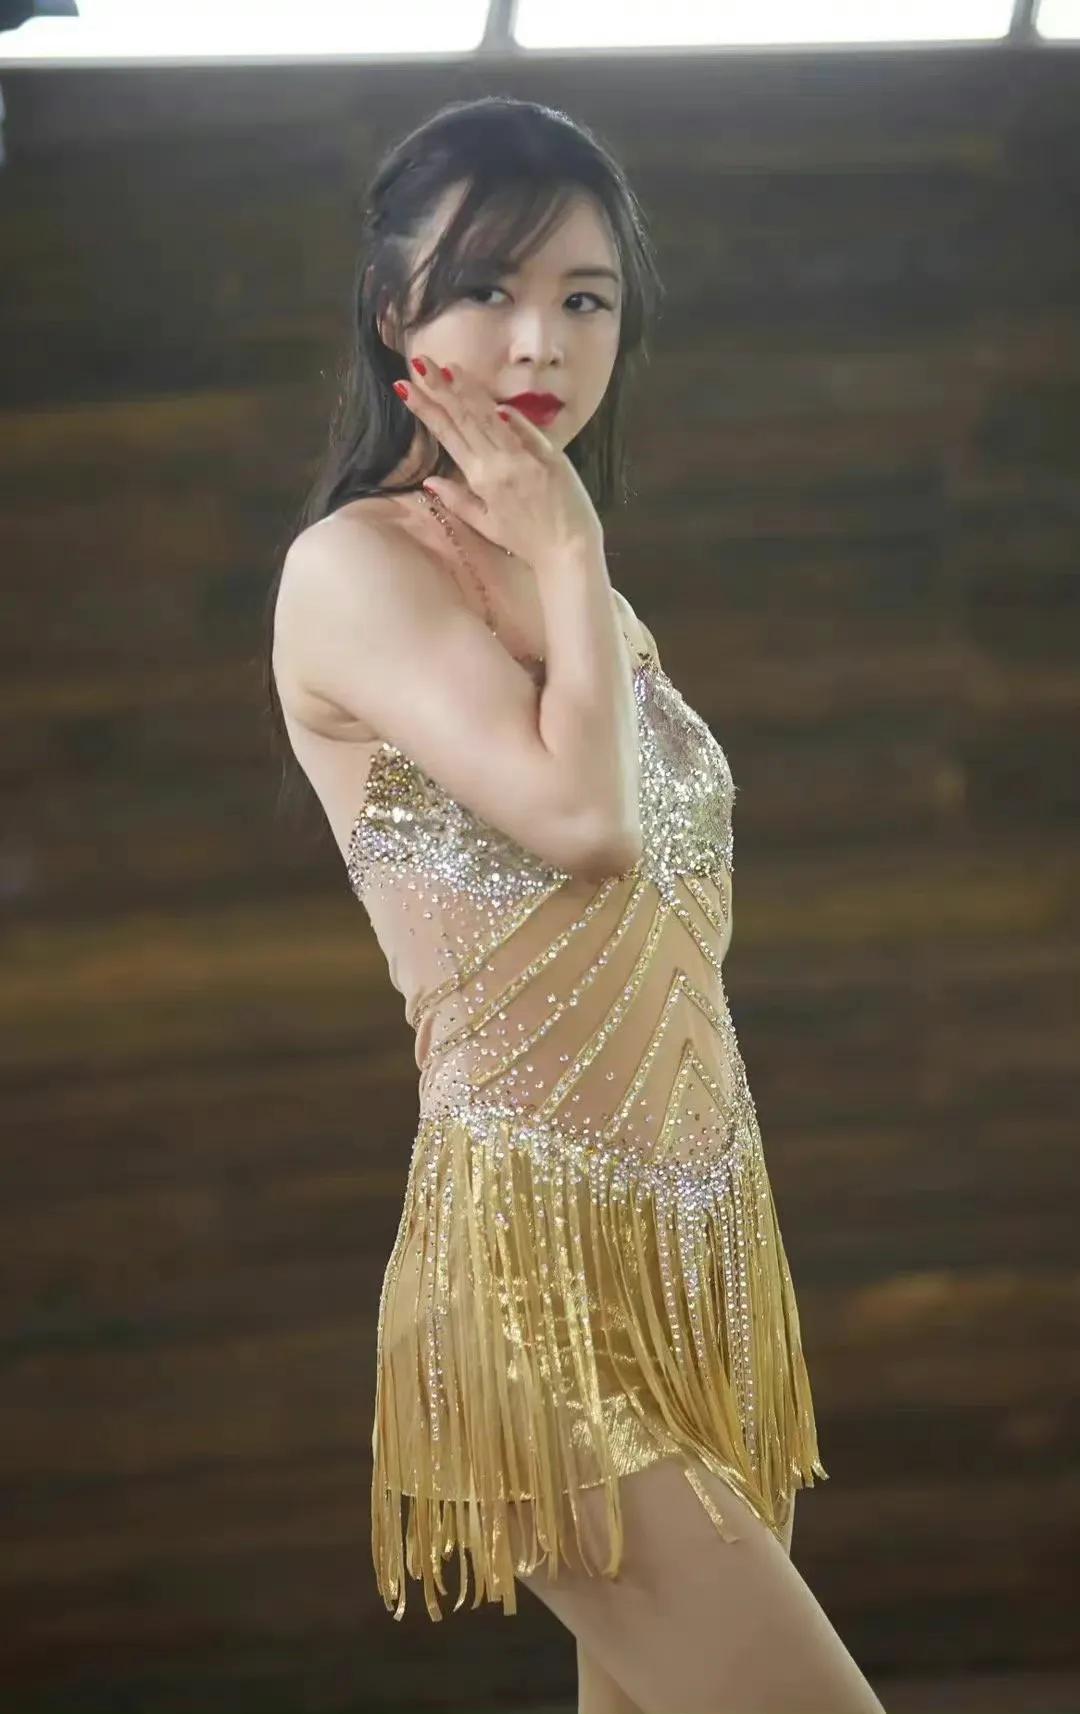 Beauty star Zhang Jingchu sexy photo - iNEWS